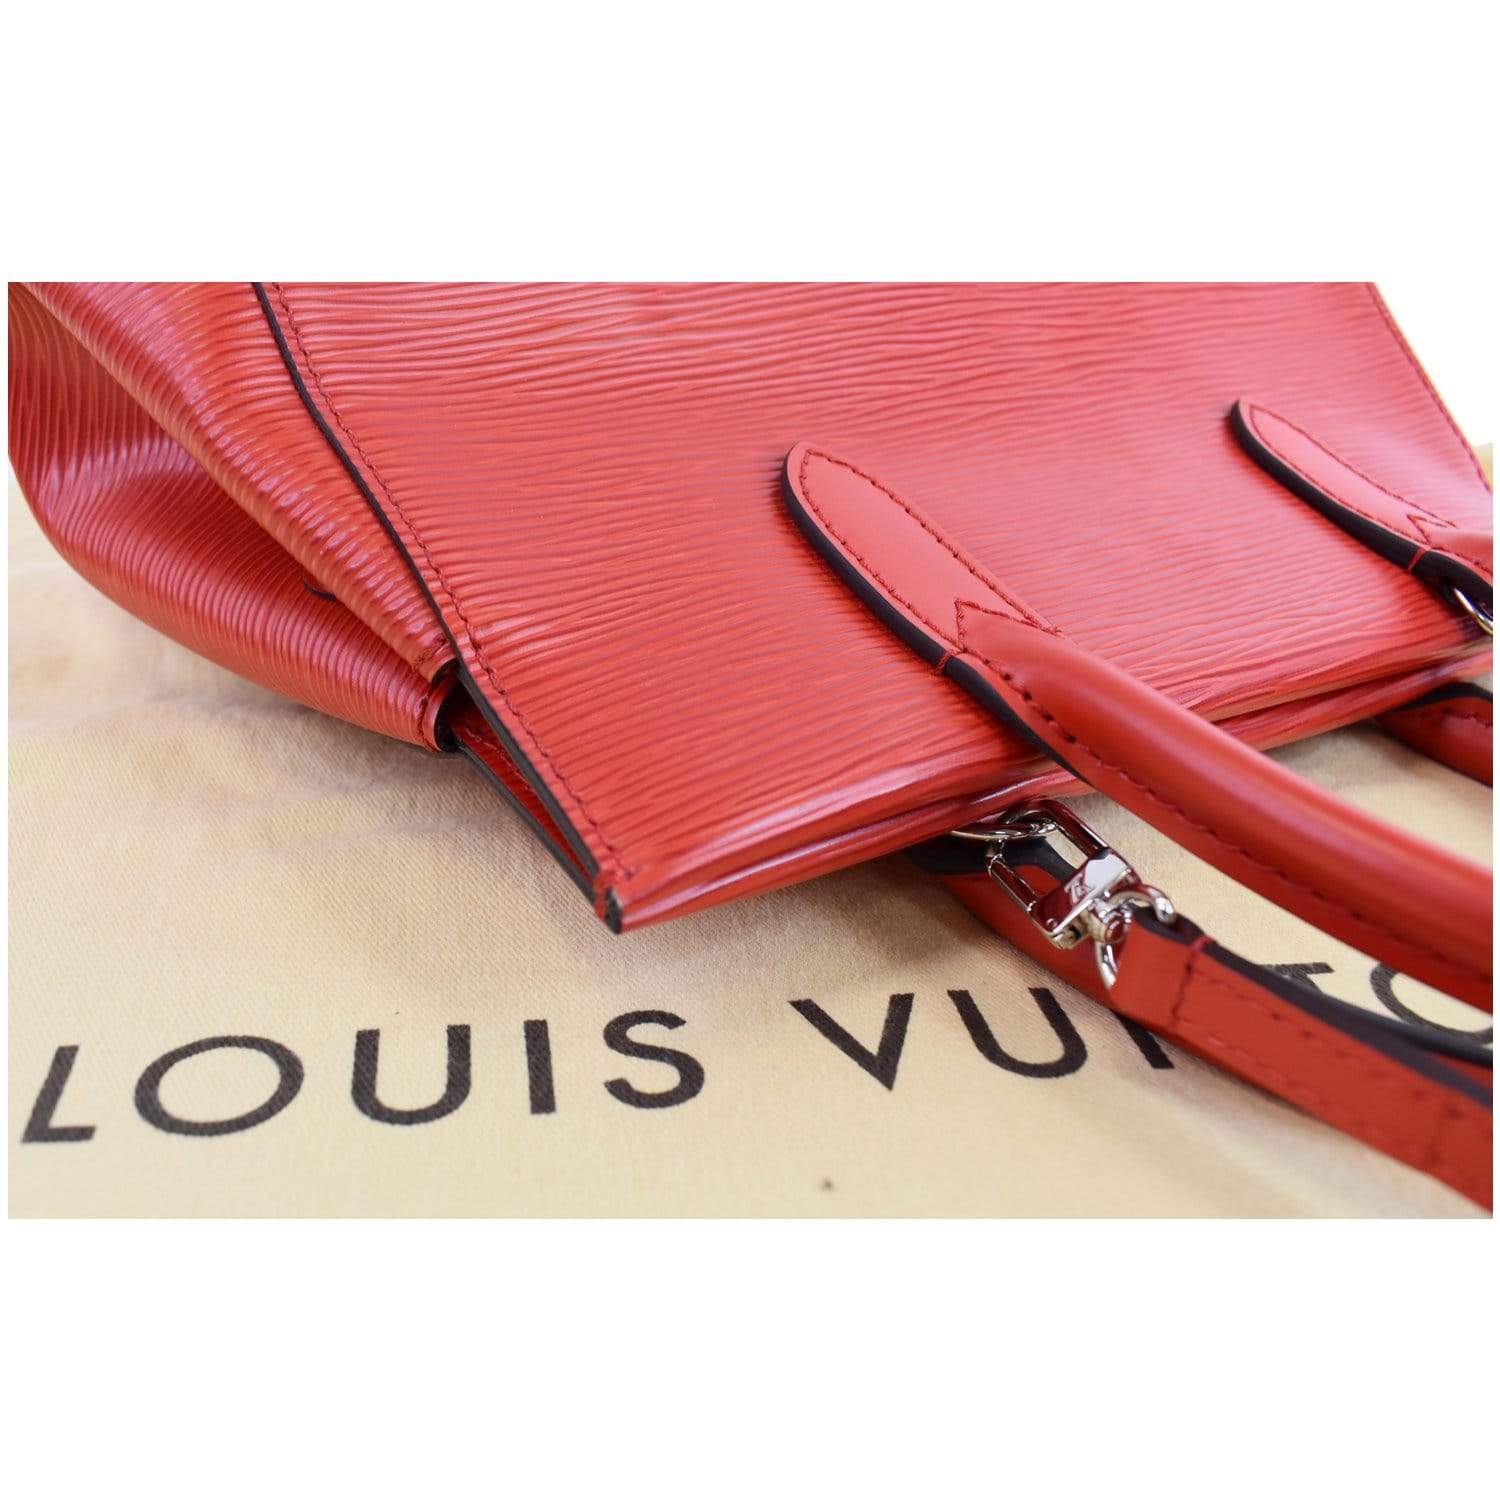 Marly cloth handbag Louis Vuitton Blue in Cloth - 27477641